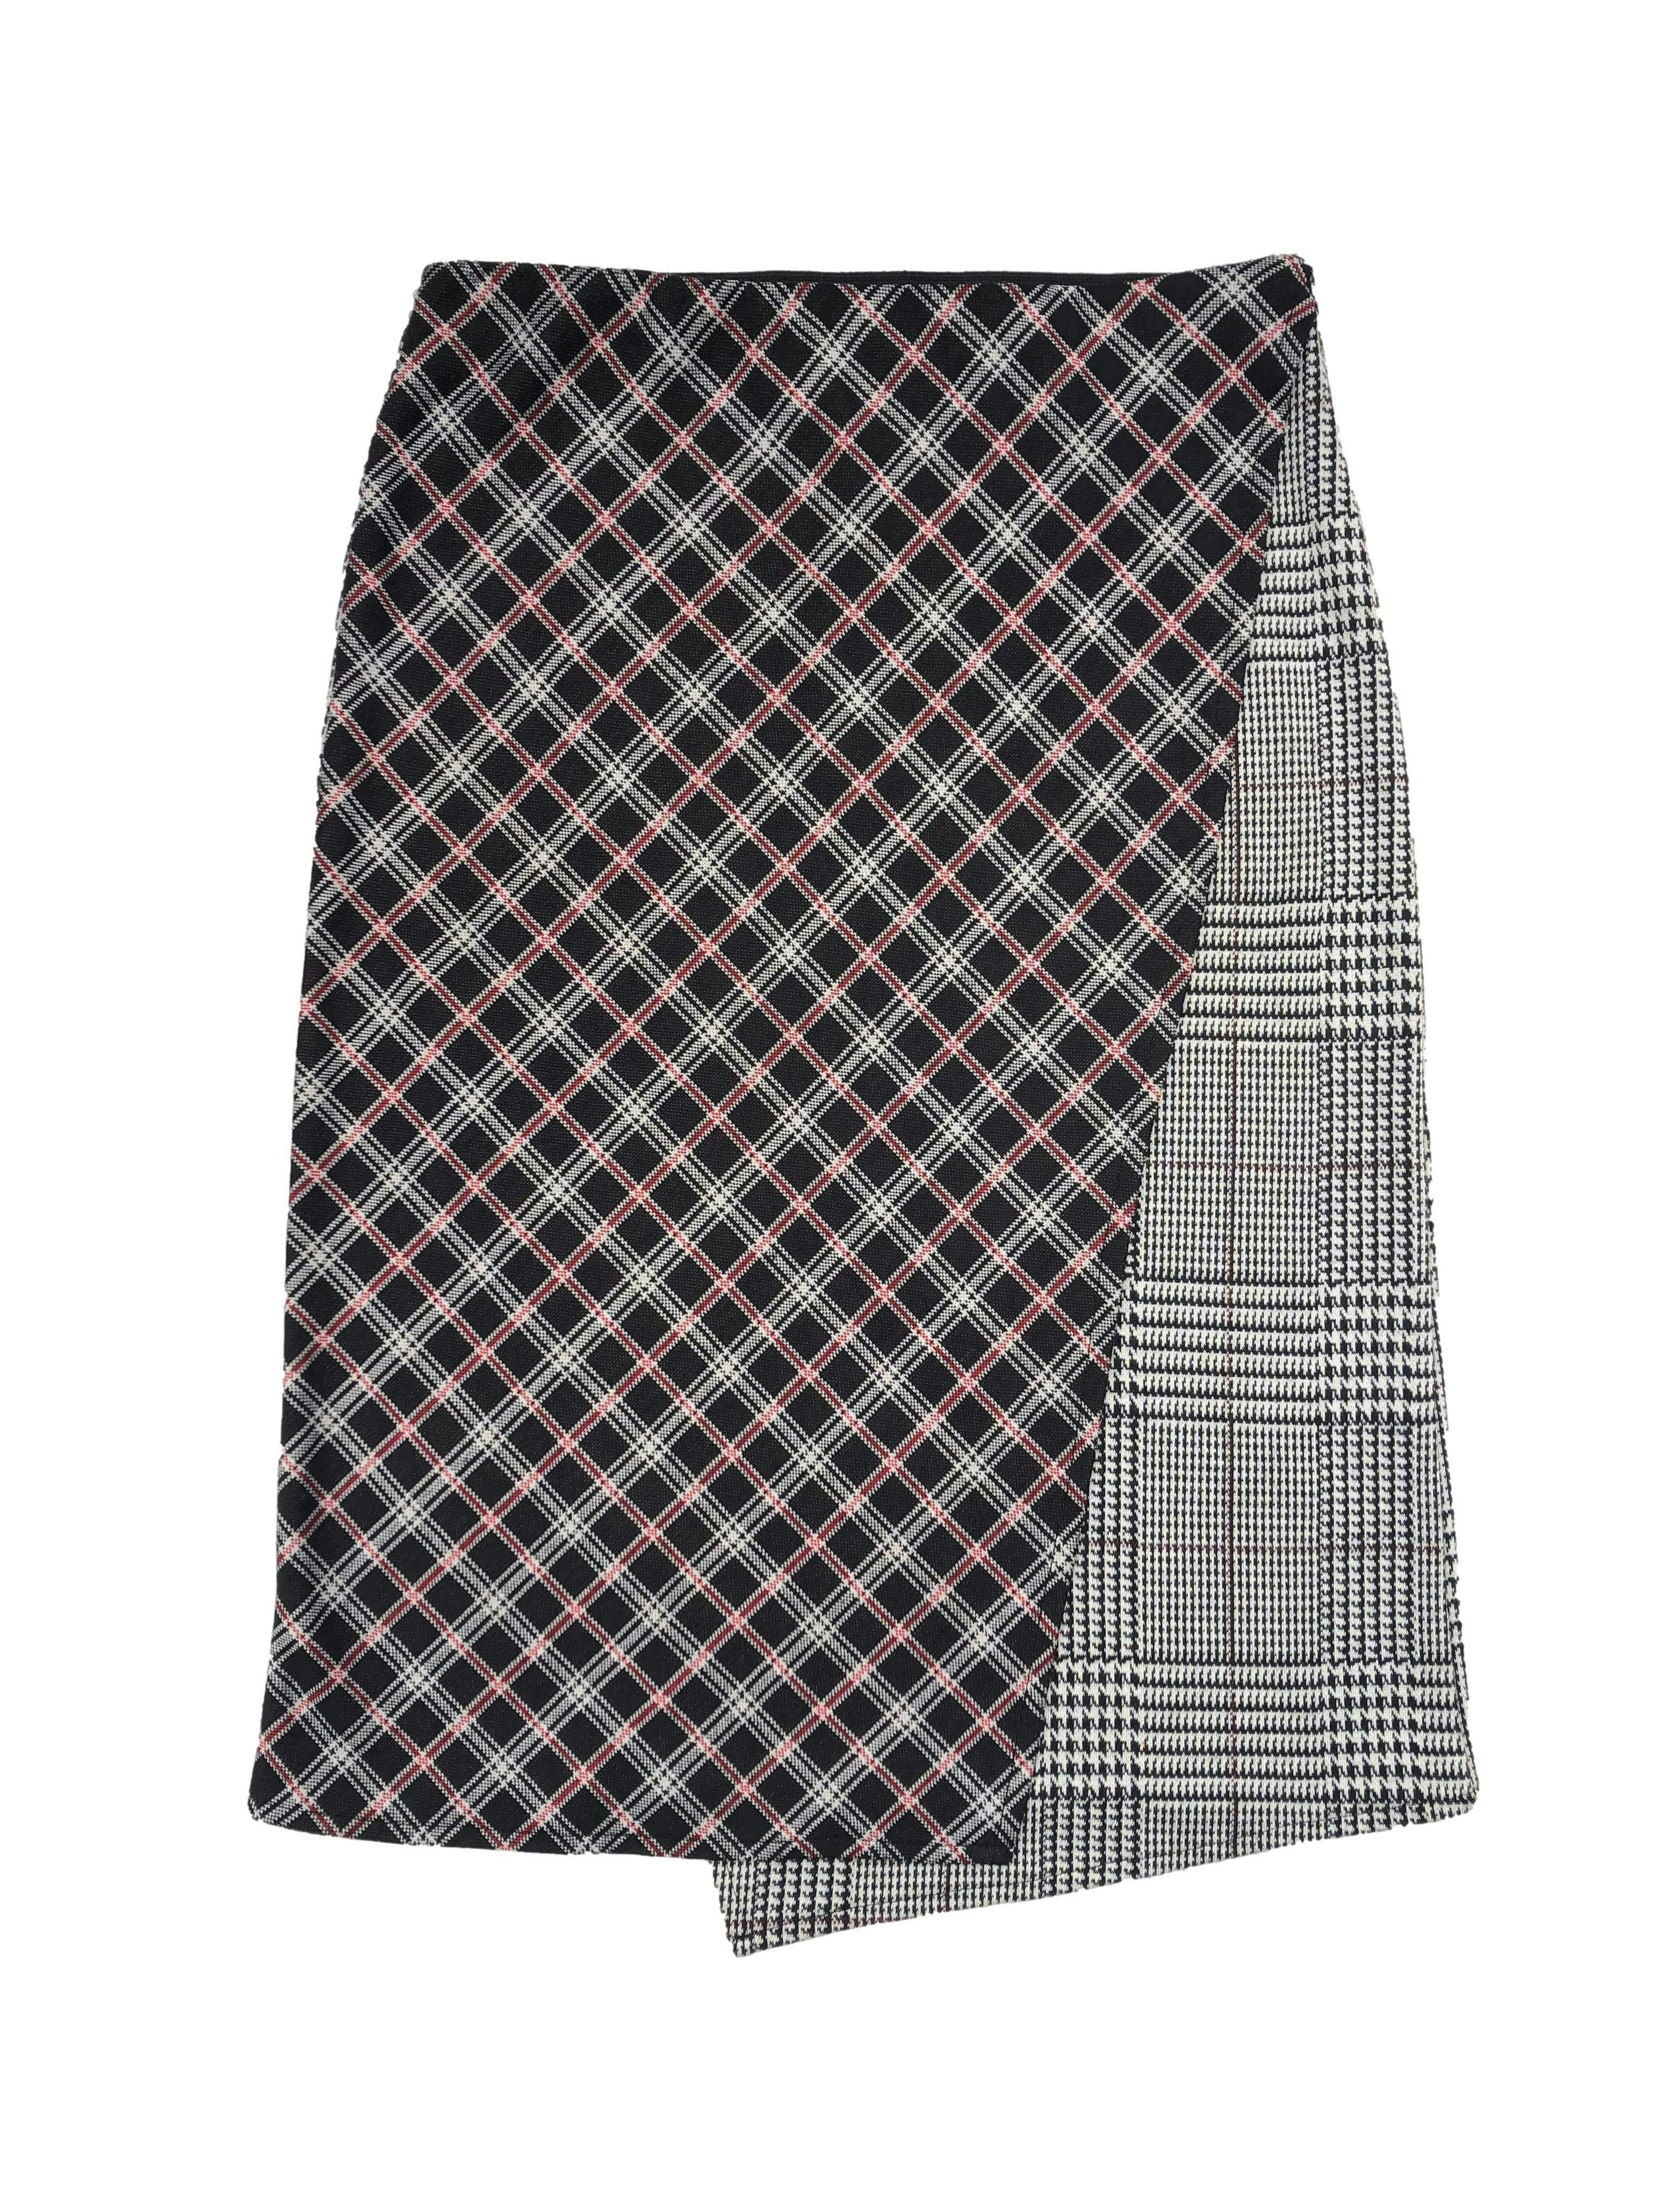 Falda midi Zara con cruce frontal, mix de estampados a cuadros en blanco, negro y rojo, tela de punto con elástico en pretina. Cintura 74cm sin estirar, Largo 63cm.